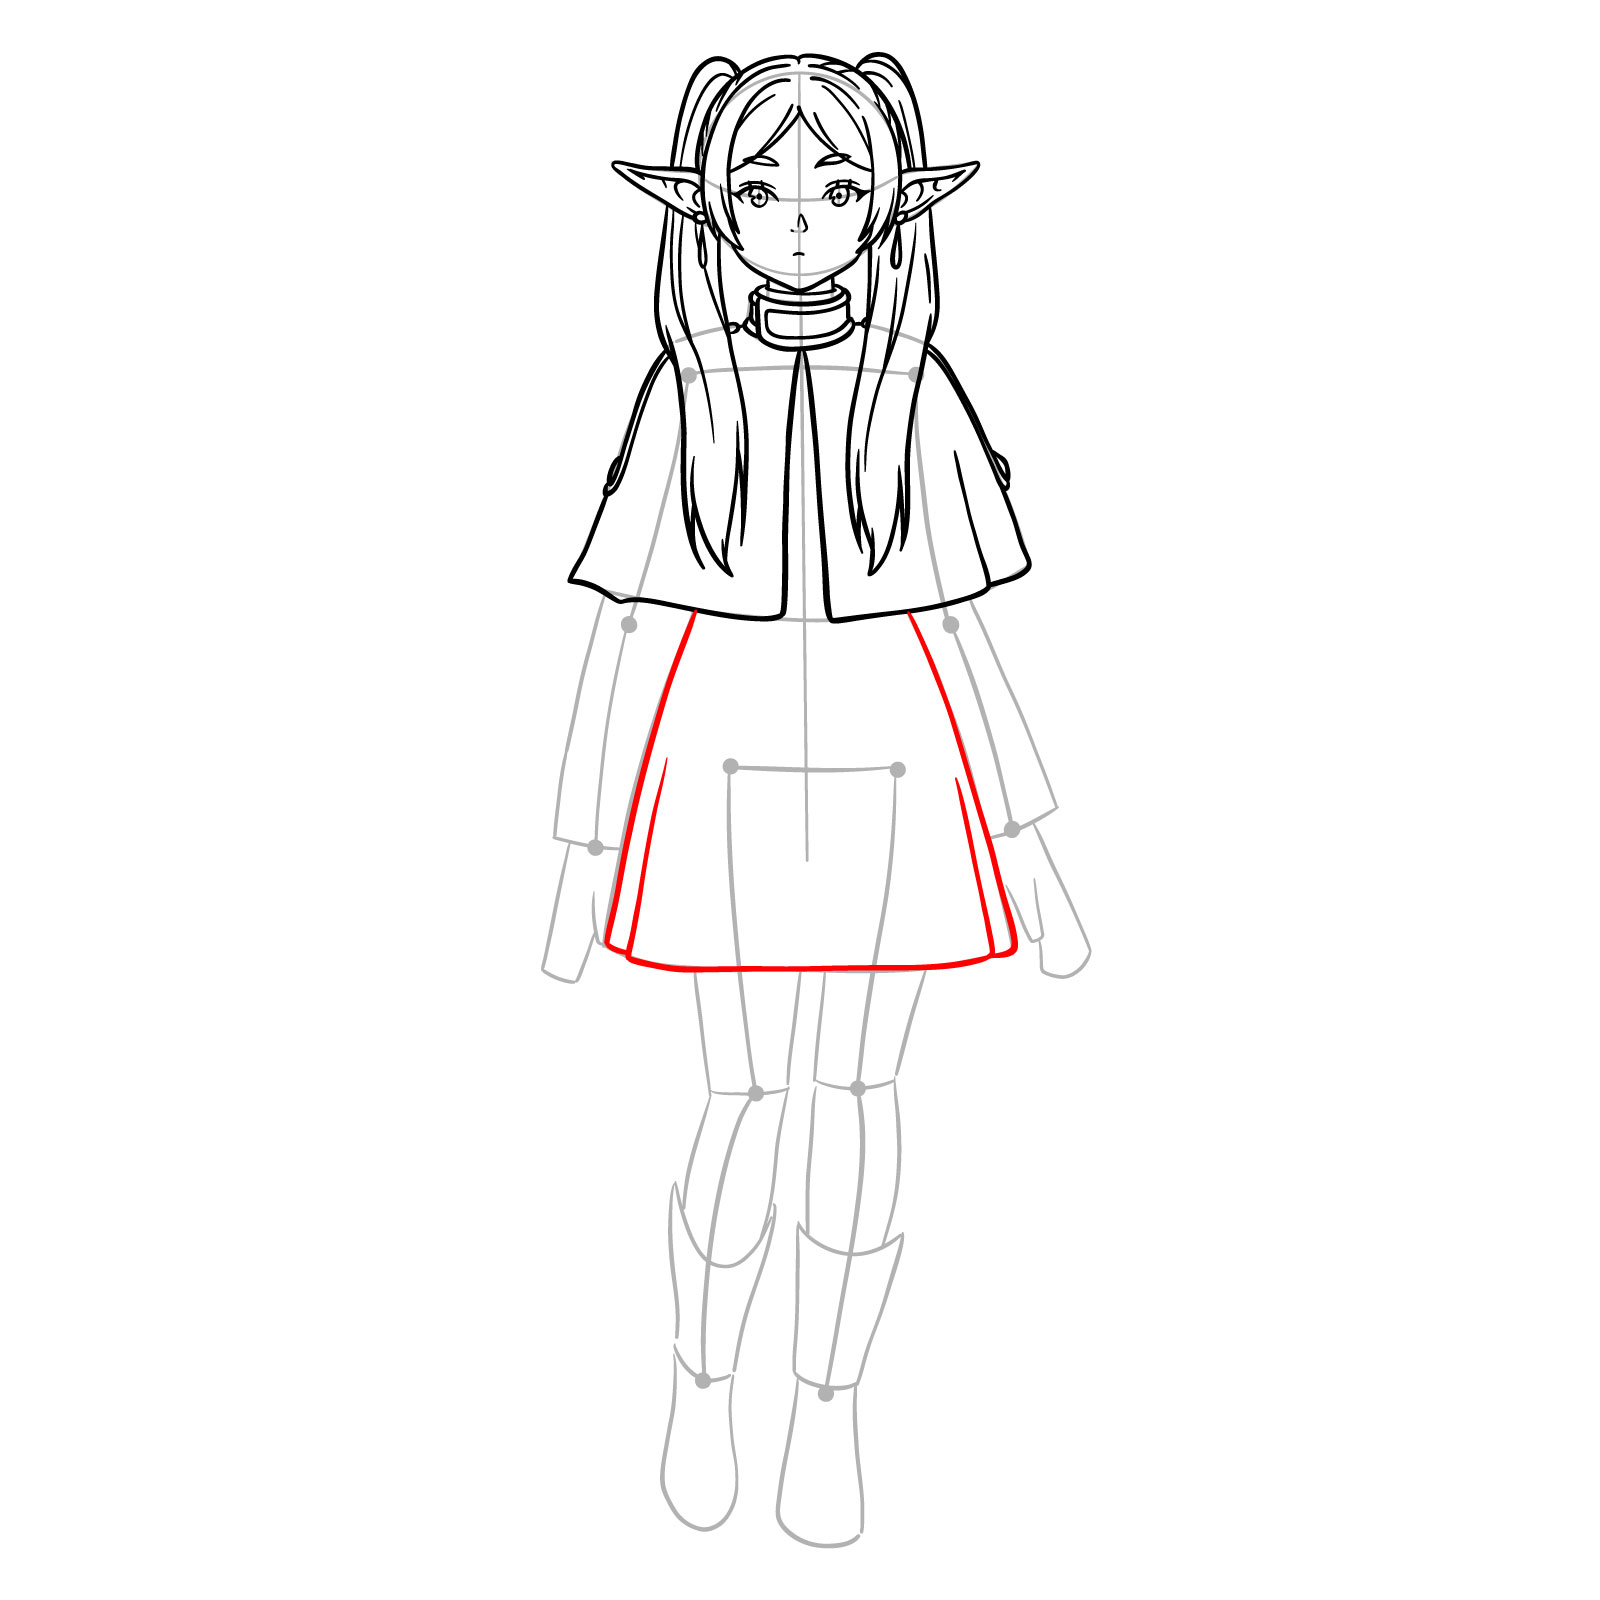 Skirt outlining in Frieren's full body artwork - step 14